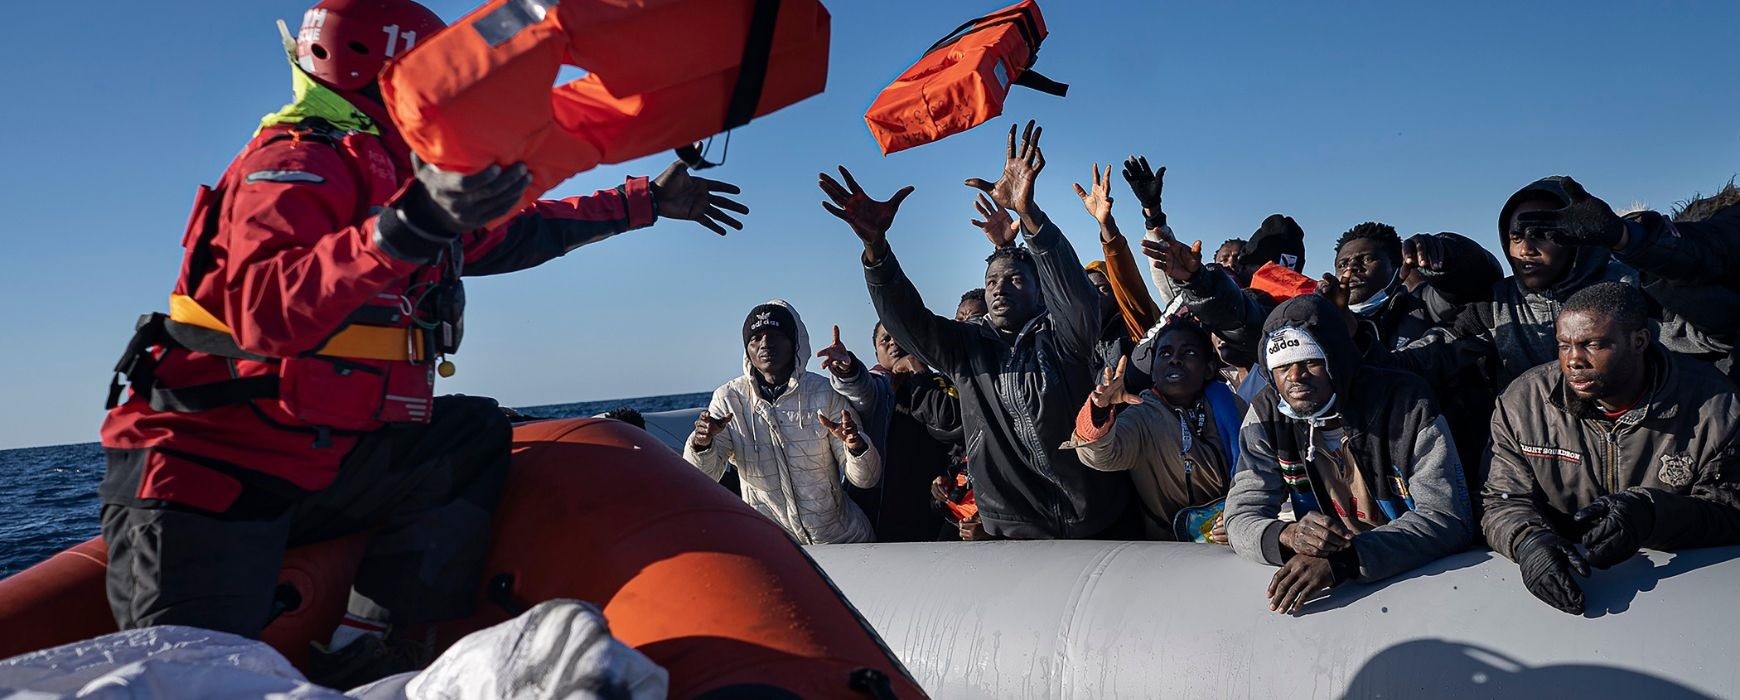 Ιταλο-γαλλική κρίση με αφορμή την αύξηση των προσφυγικών ροών